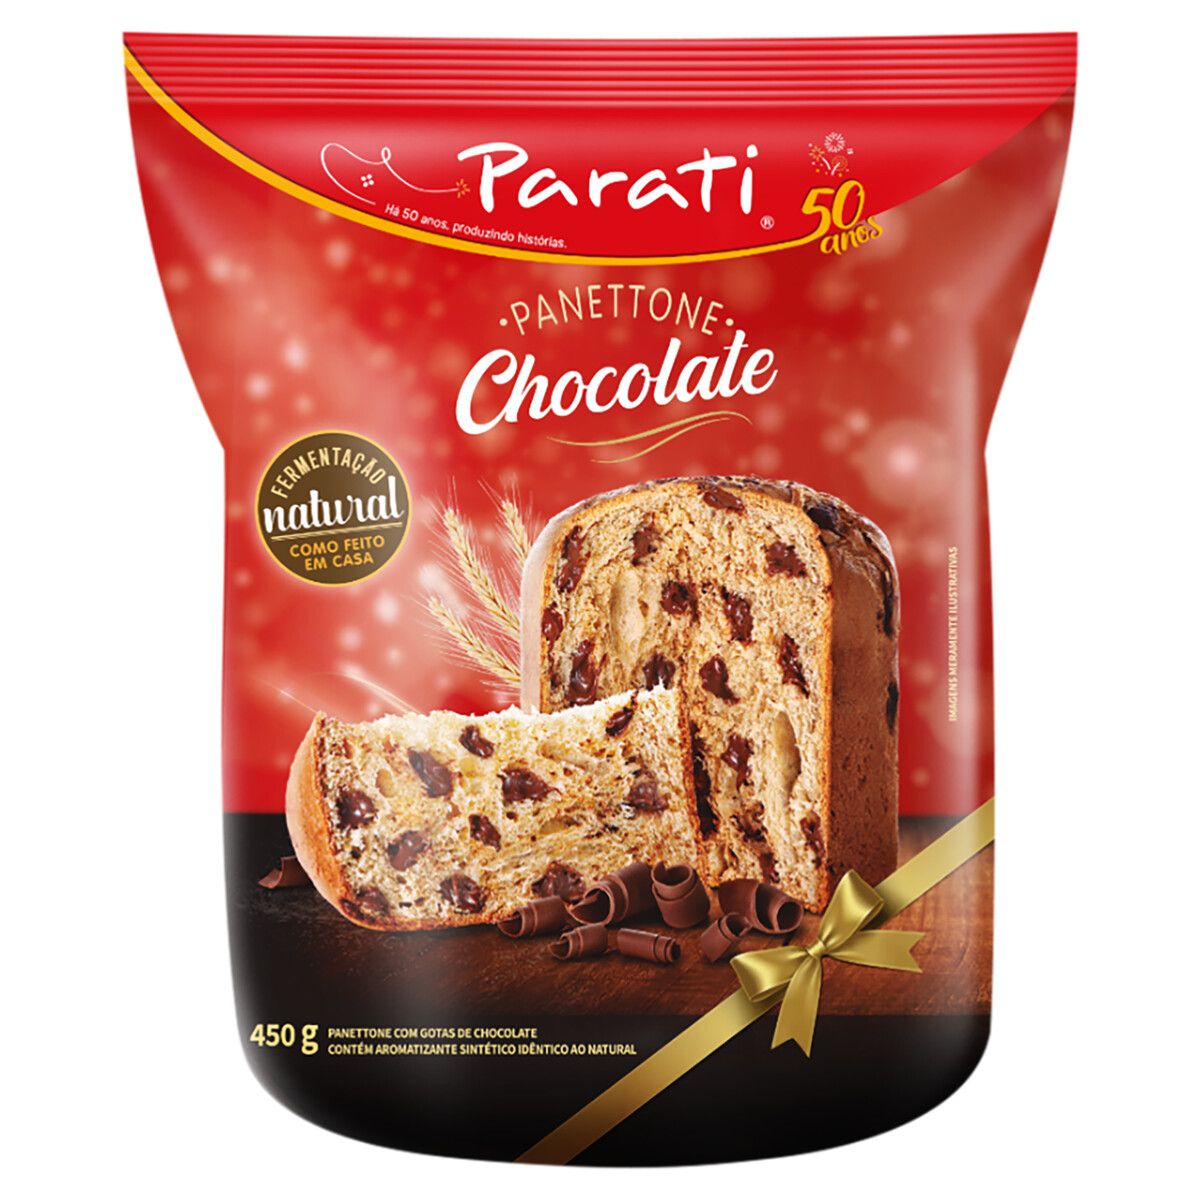 Panettone com Gotas de Chocolate Parati Pacote 450g